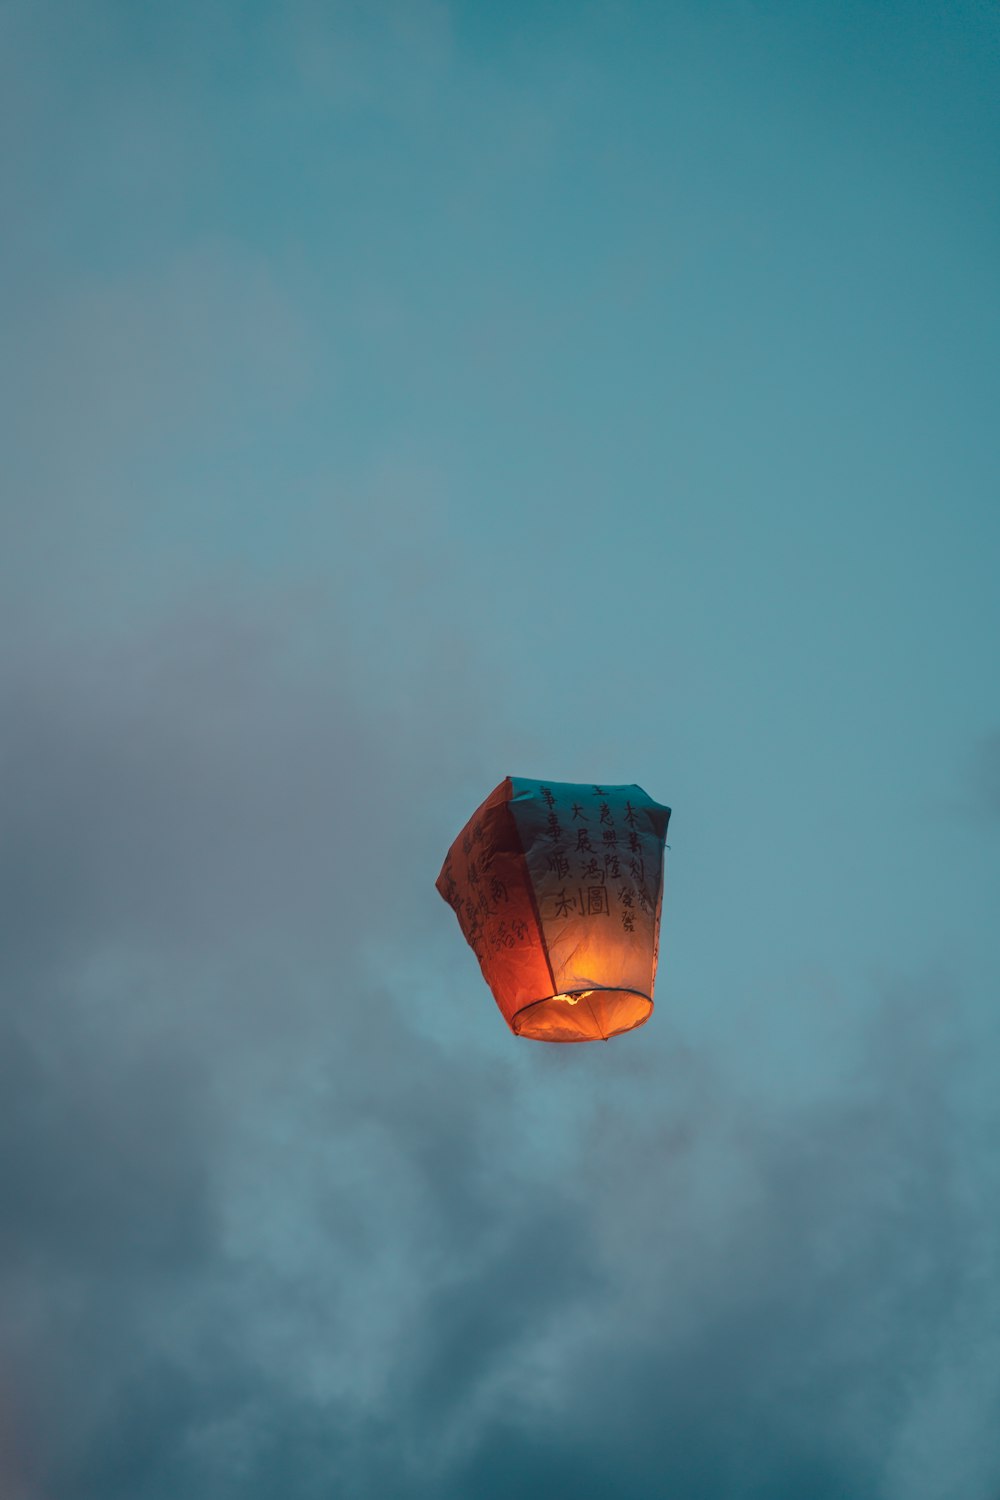 Un globo aerostático volando a través de un cielo nublado